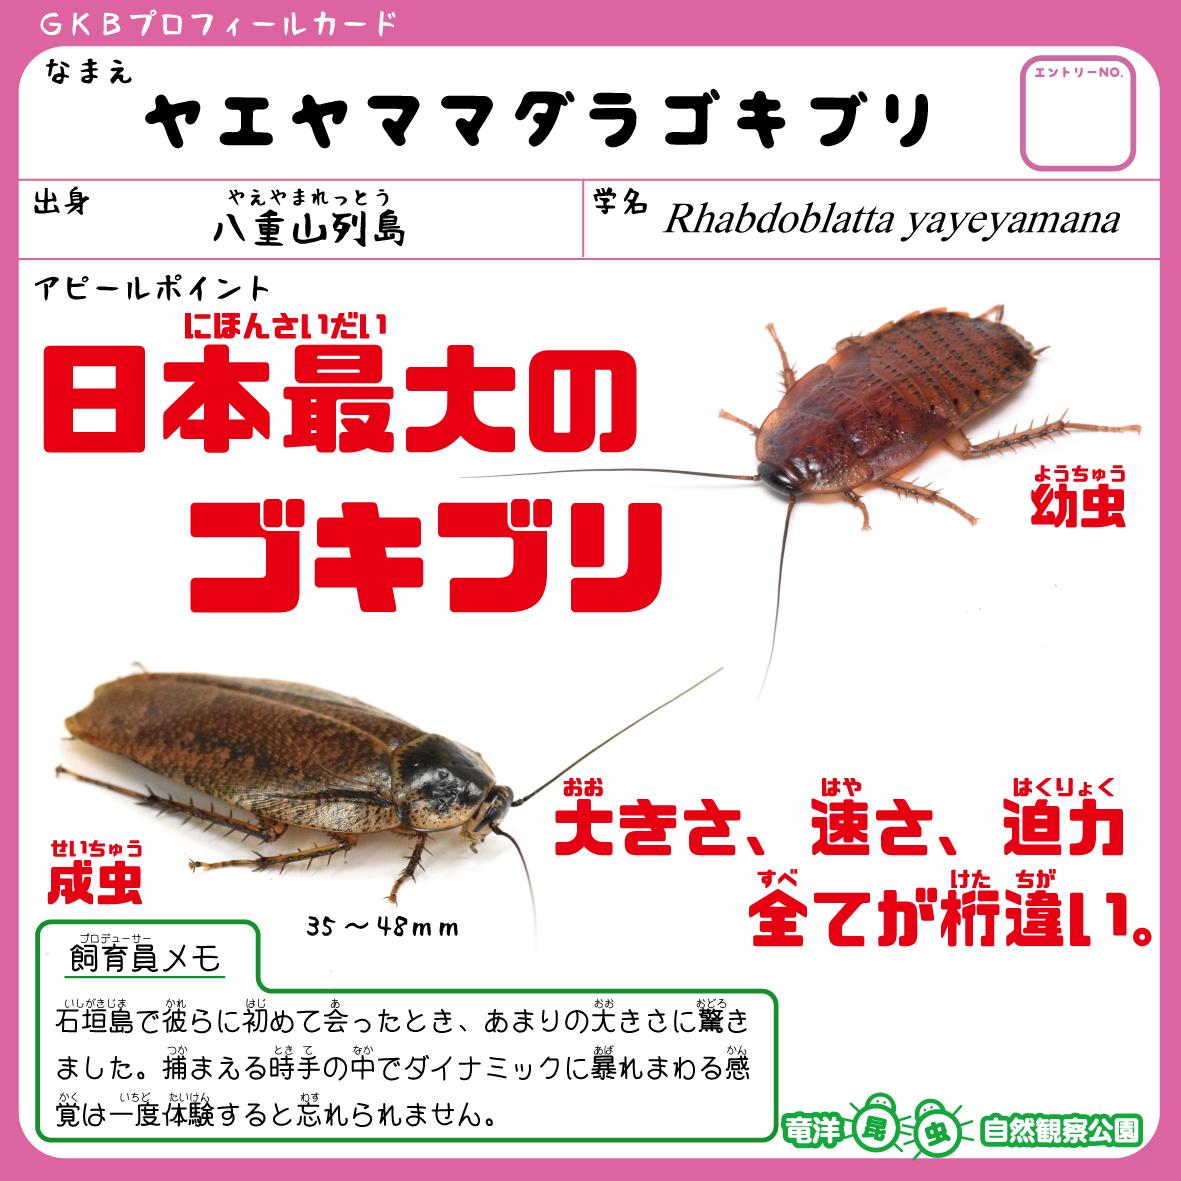 竜洋昆虫自然観察公園 公式 ヤエヤママダラゴキブリ 日本最大のゴキブリにして幼虫は水に潜ることができるという最高のゴキブリです T Co 5v71g6ud4p Twitter